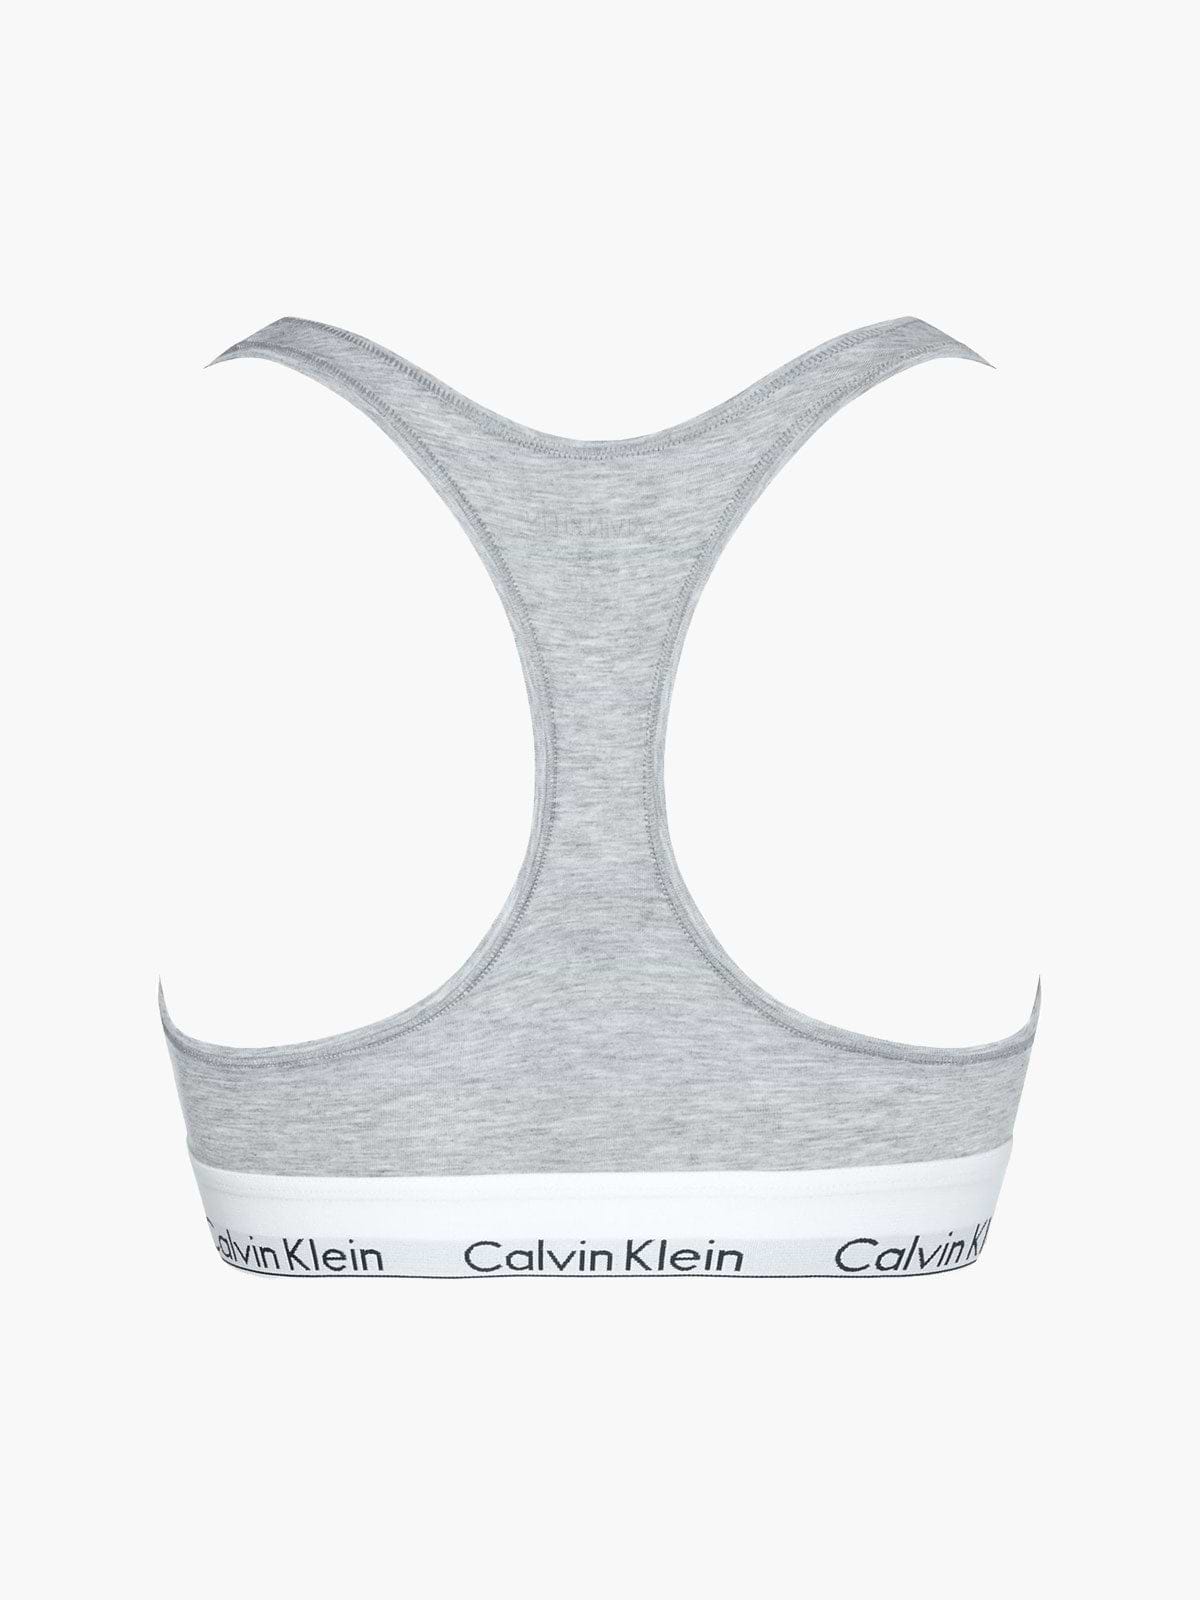 גוזייה ספורטיבית לוגו רקום // נשים- Ck|קלווין קליין